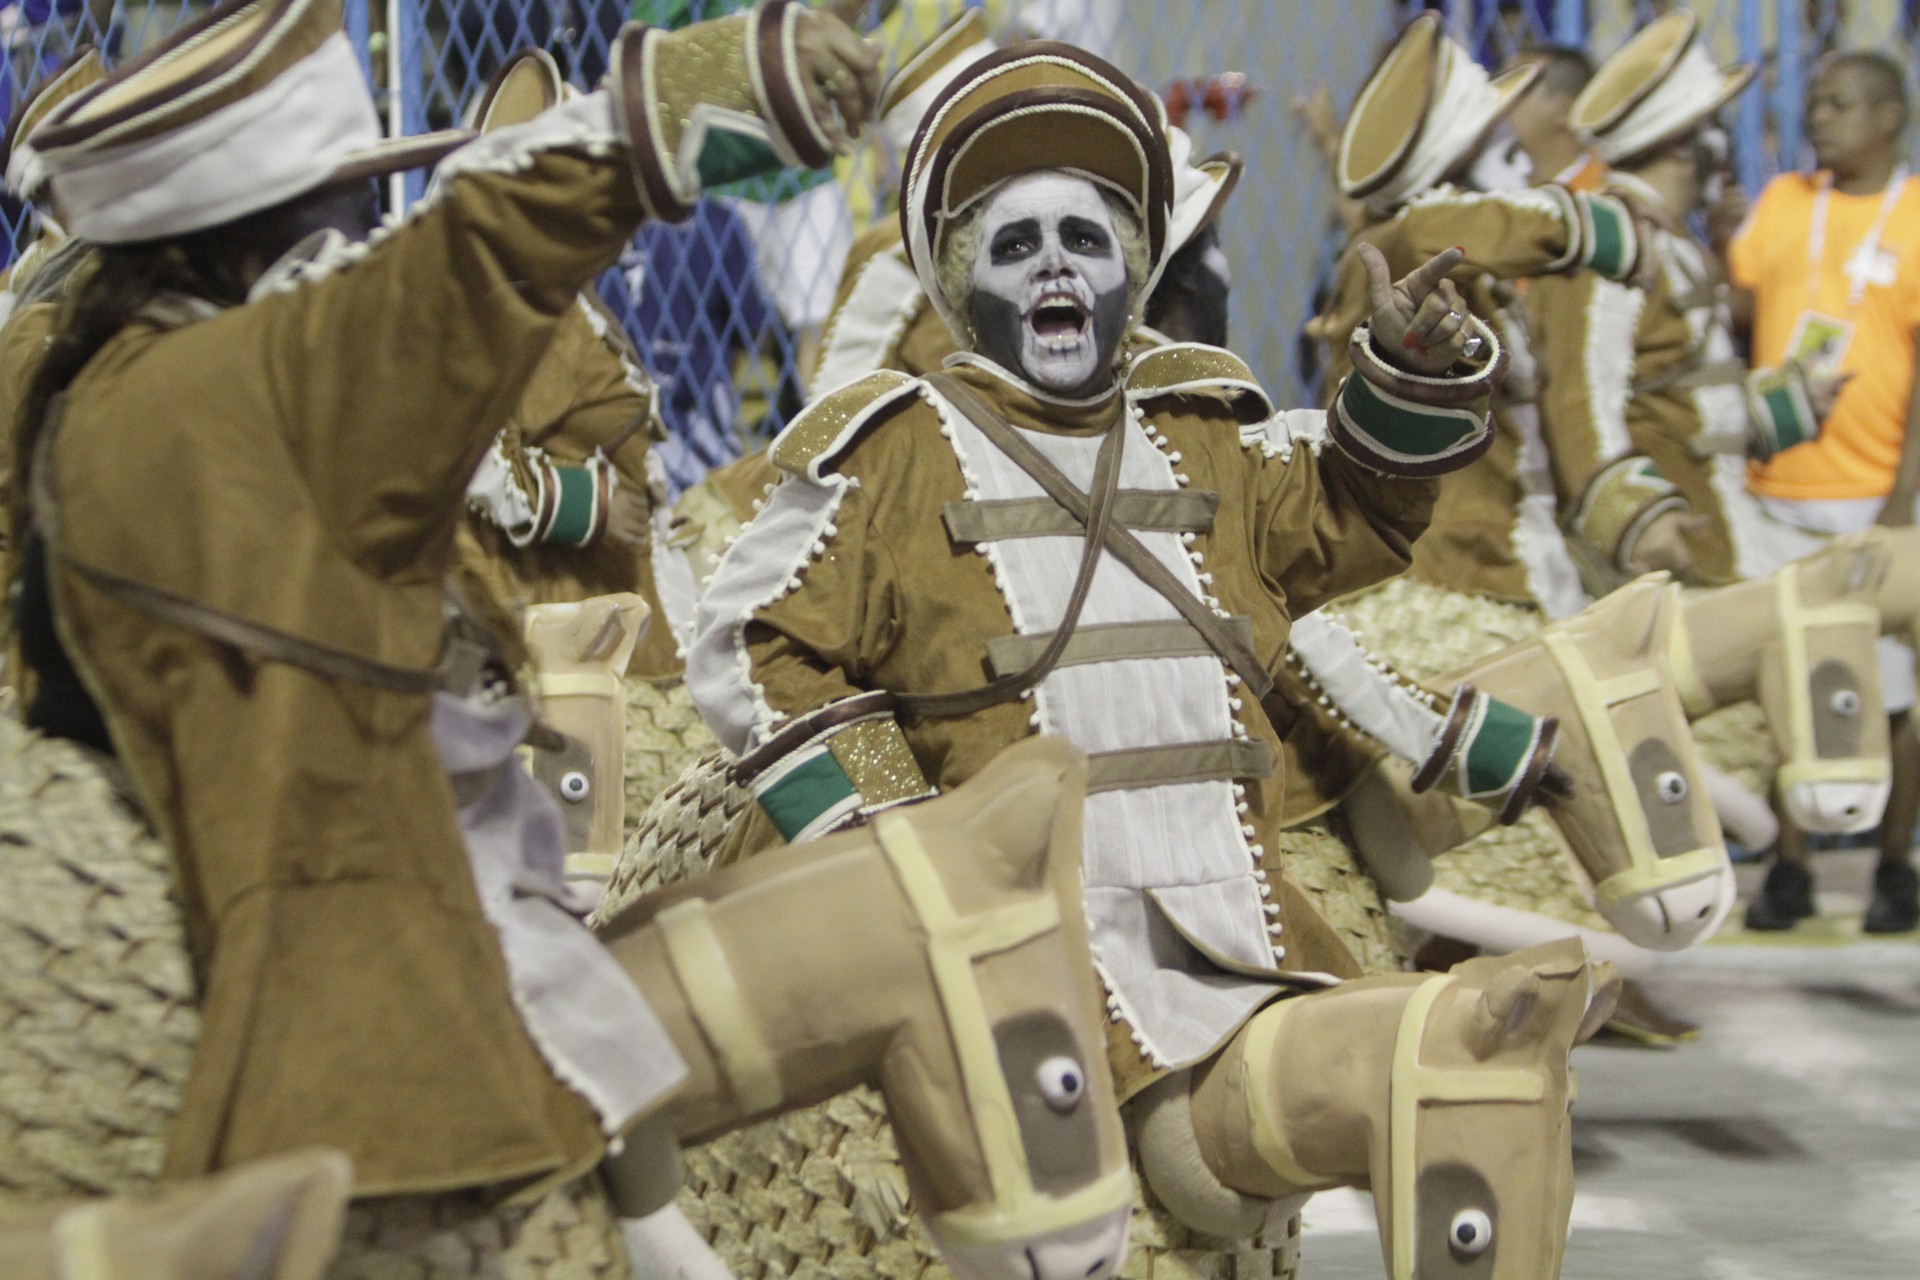 Imperio Serrano é a Campeã da Serie Ouro deste carnaval 2022 - Marcos Porto/Agencia O Dia